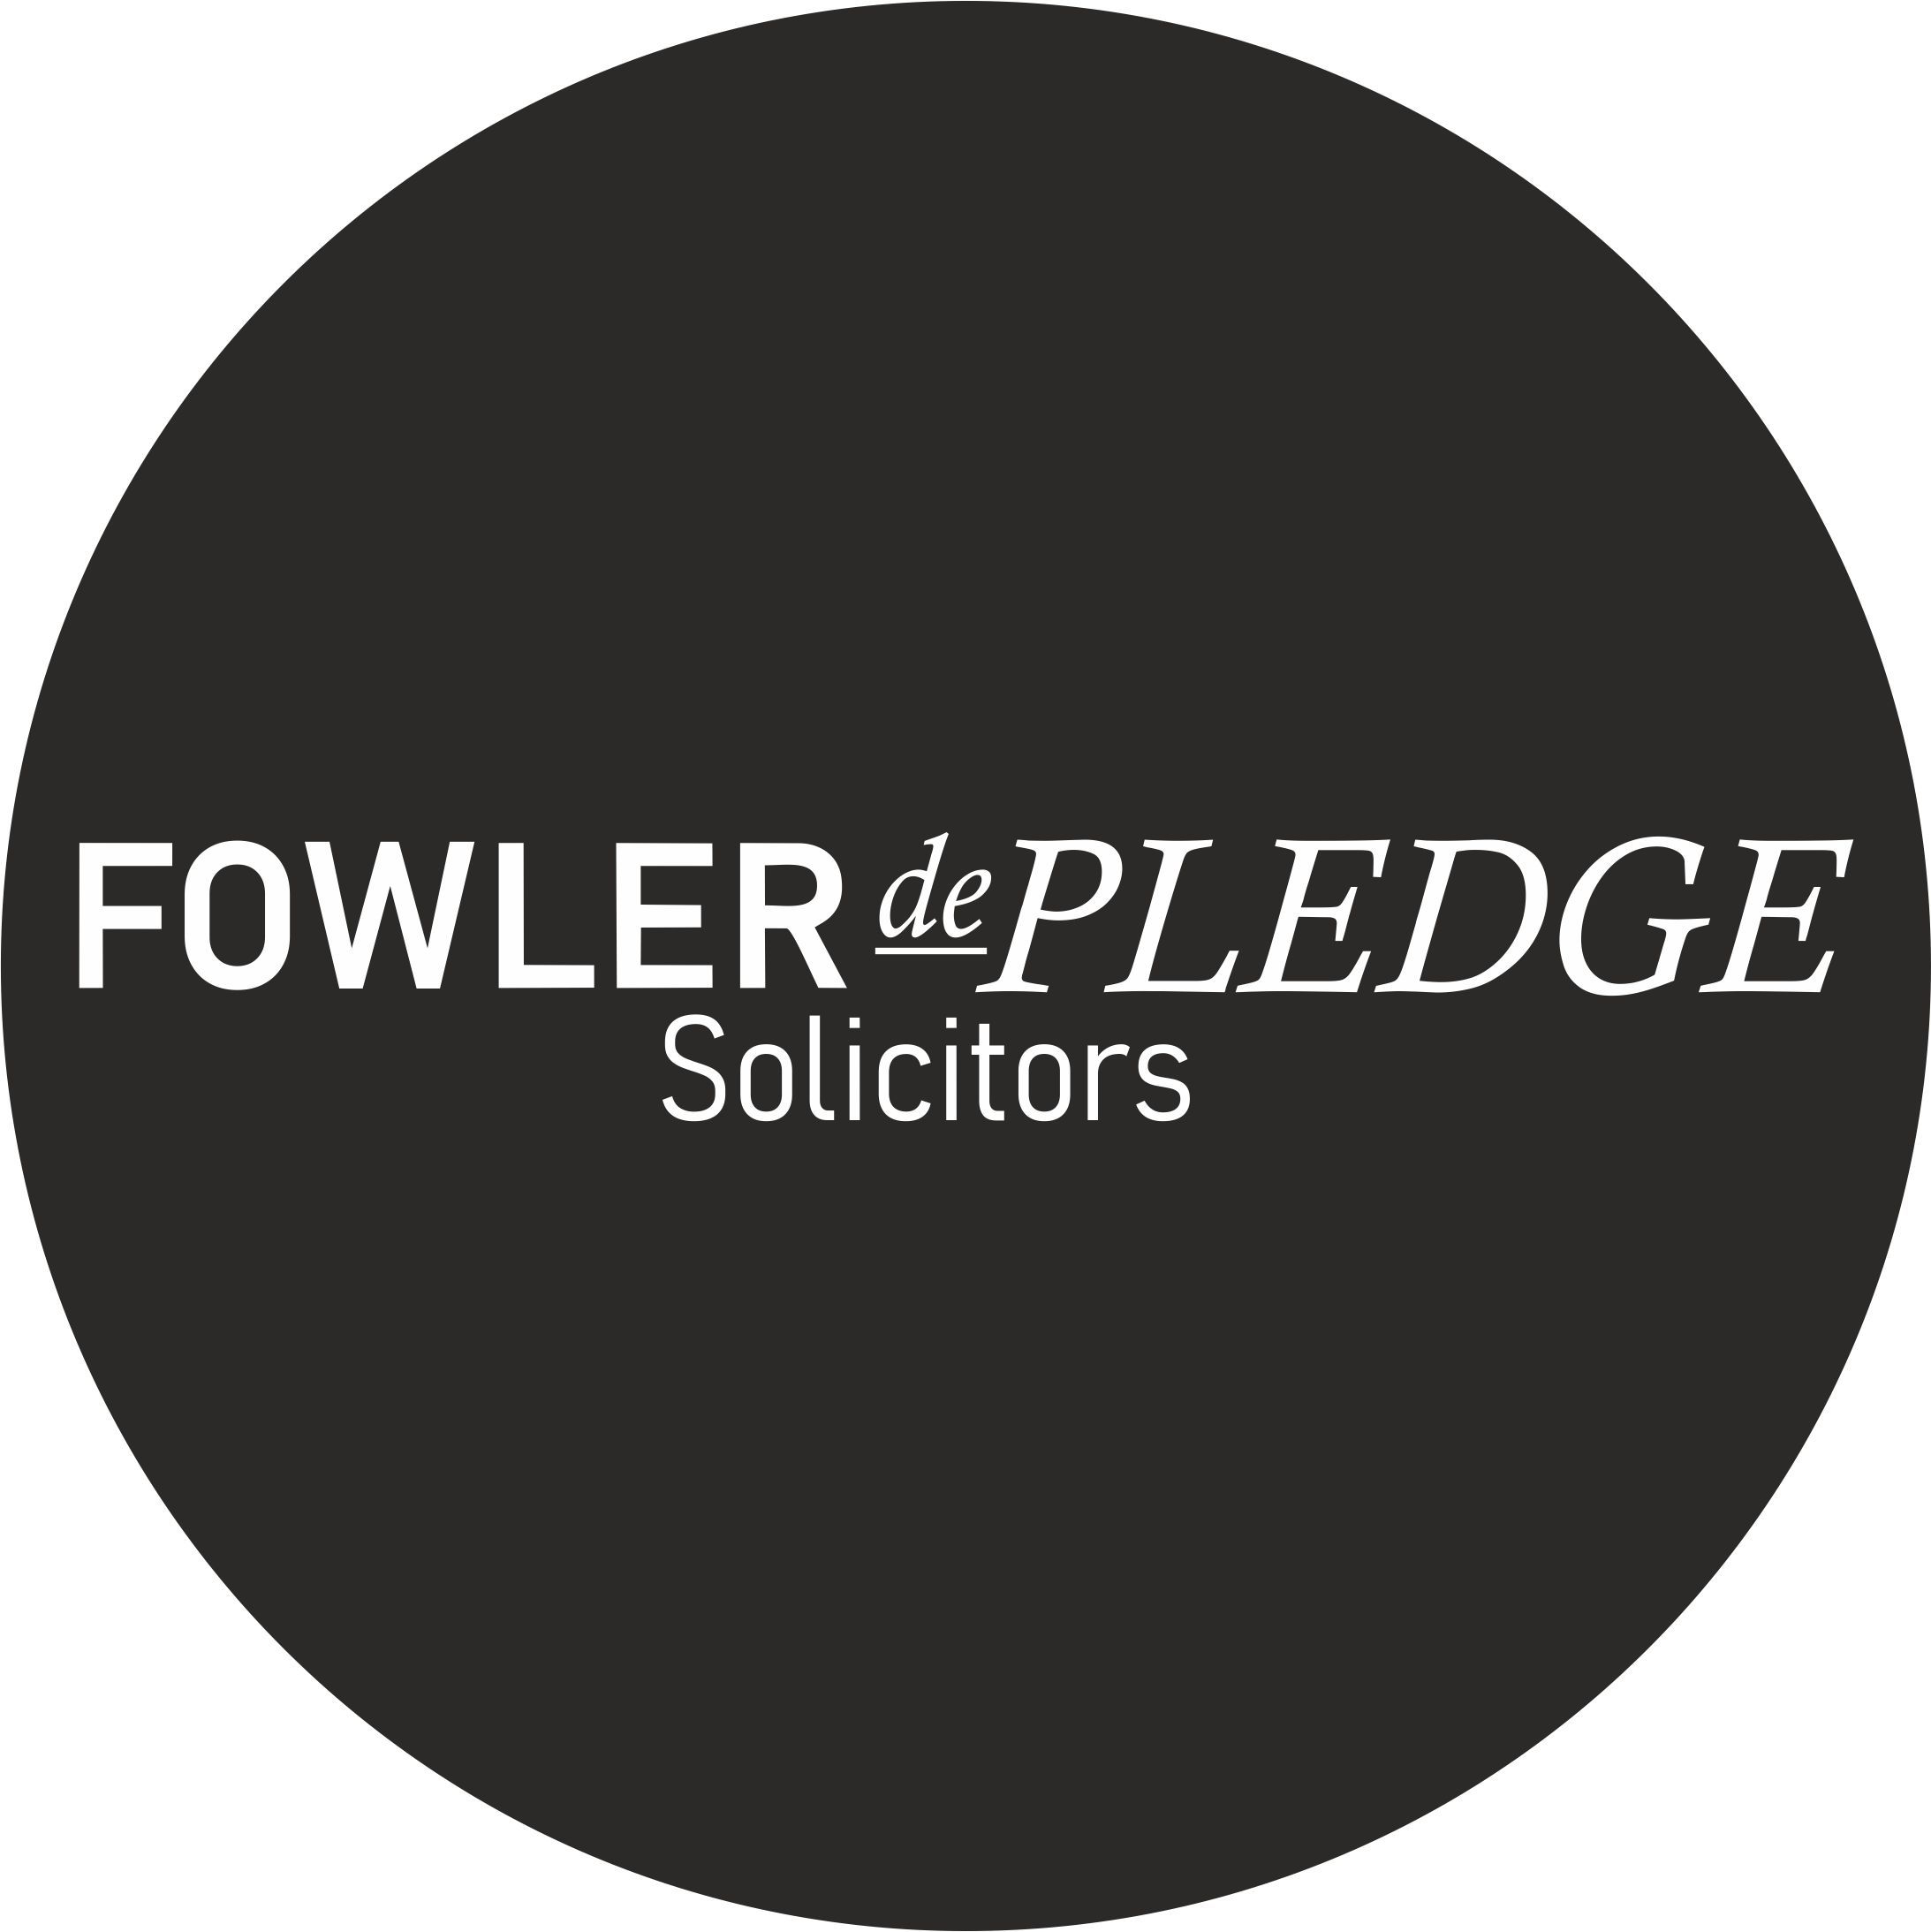  Laura Hill - Fowler de Pledge Solicitors